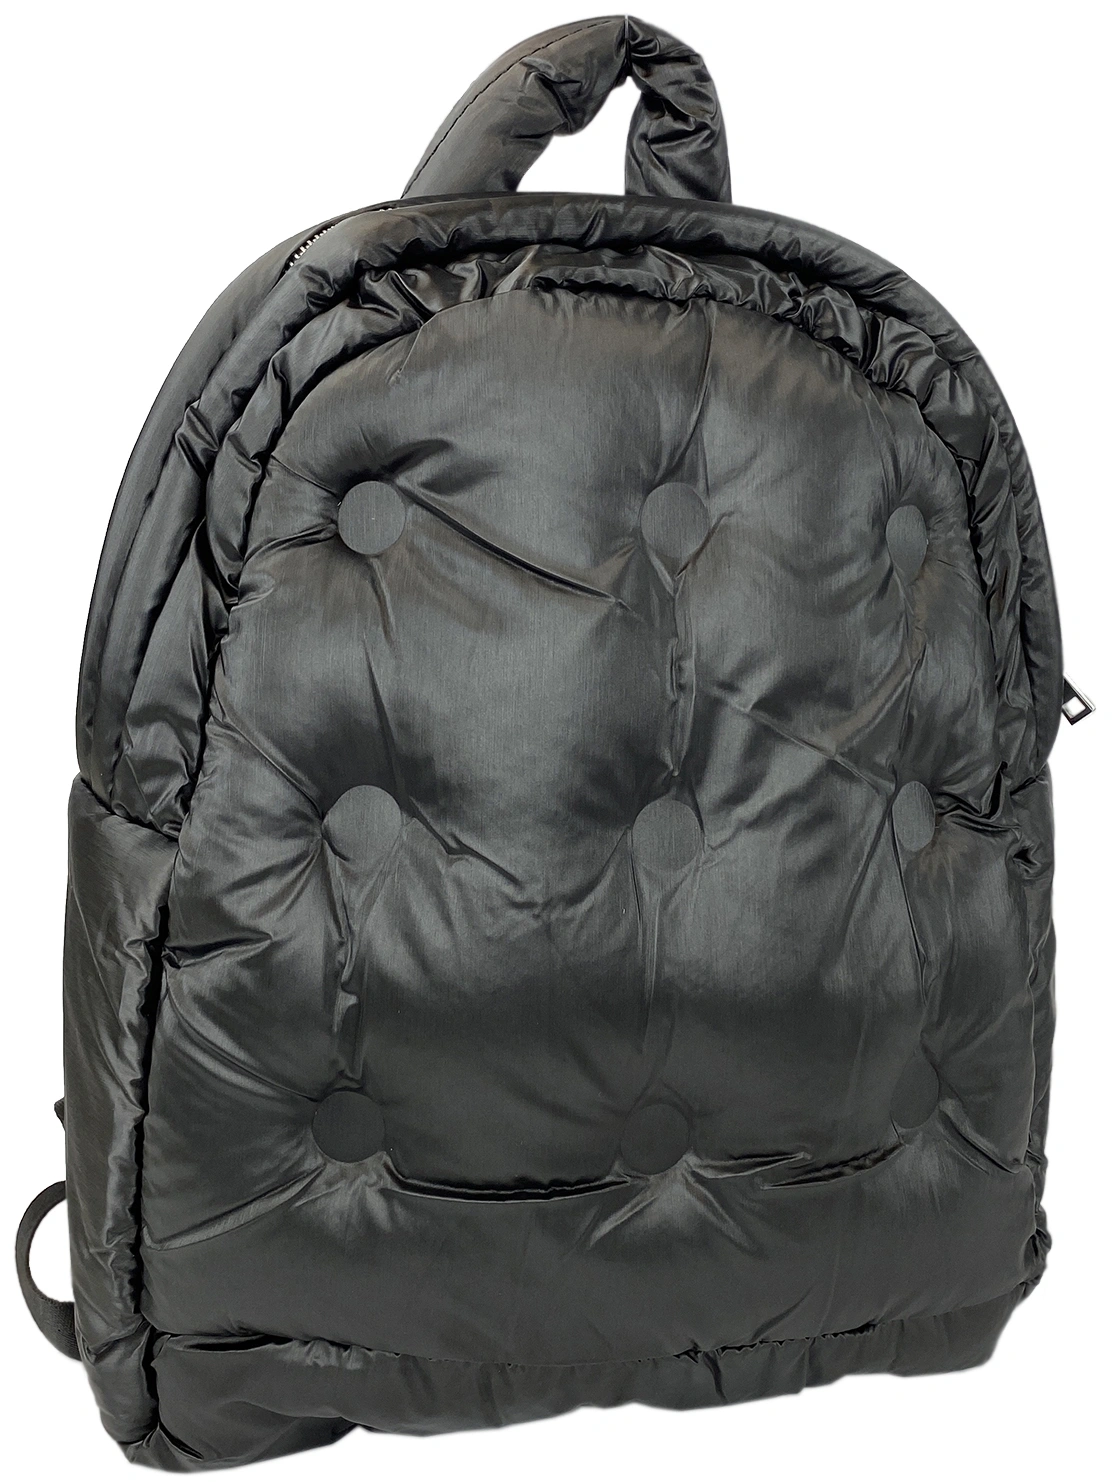 Рюкзак черный стеганый из болоньевой ткани 